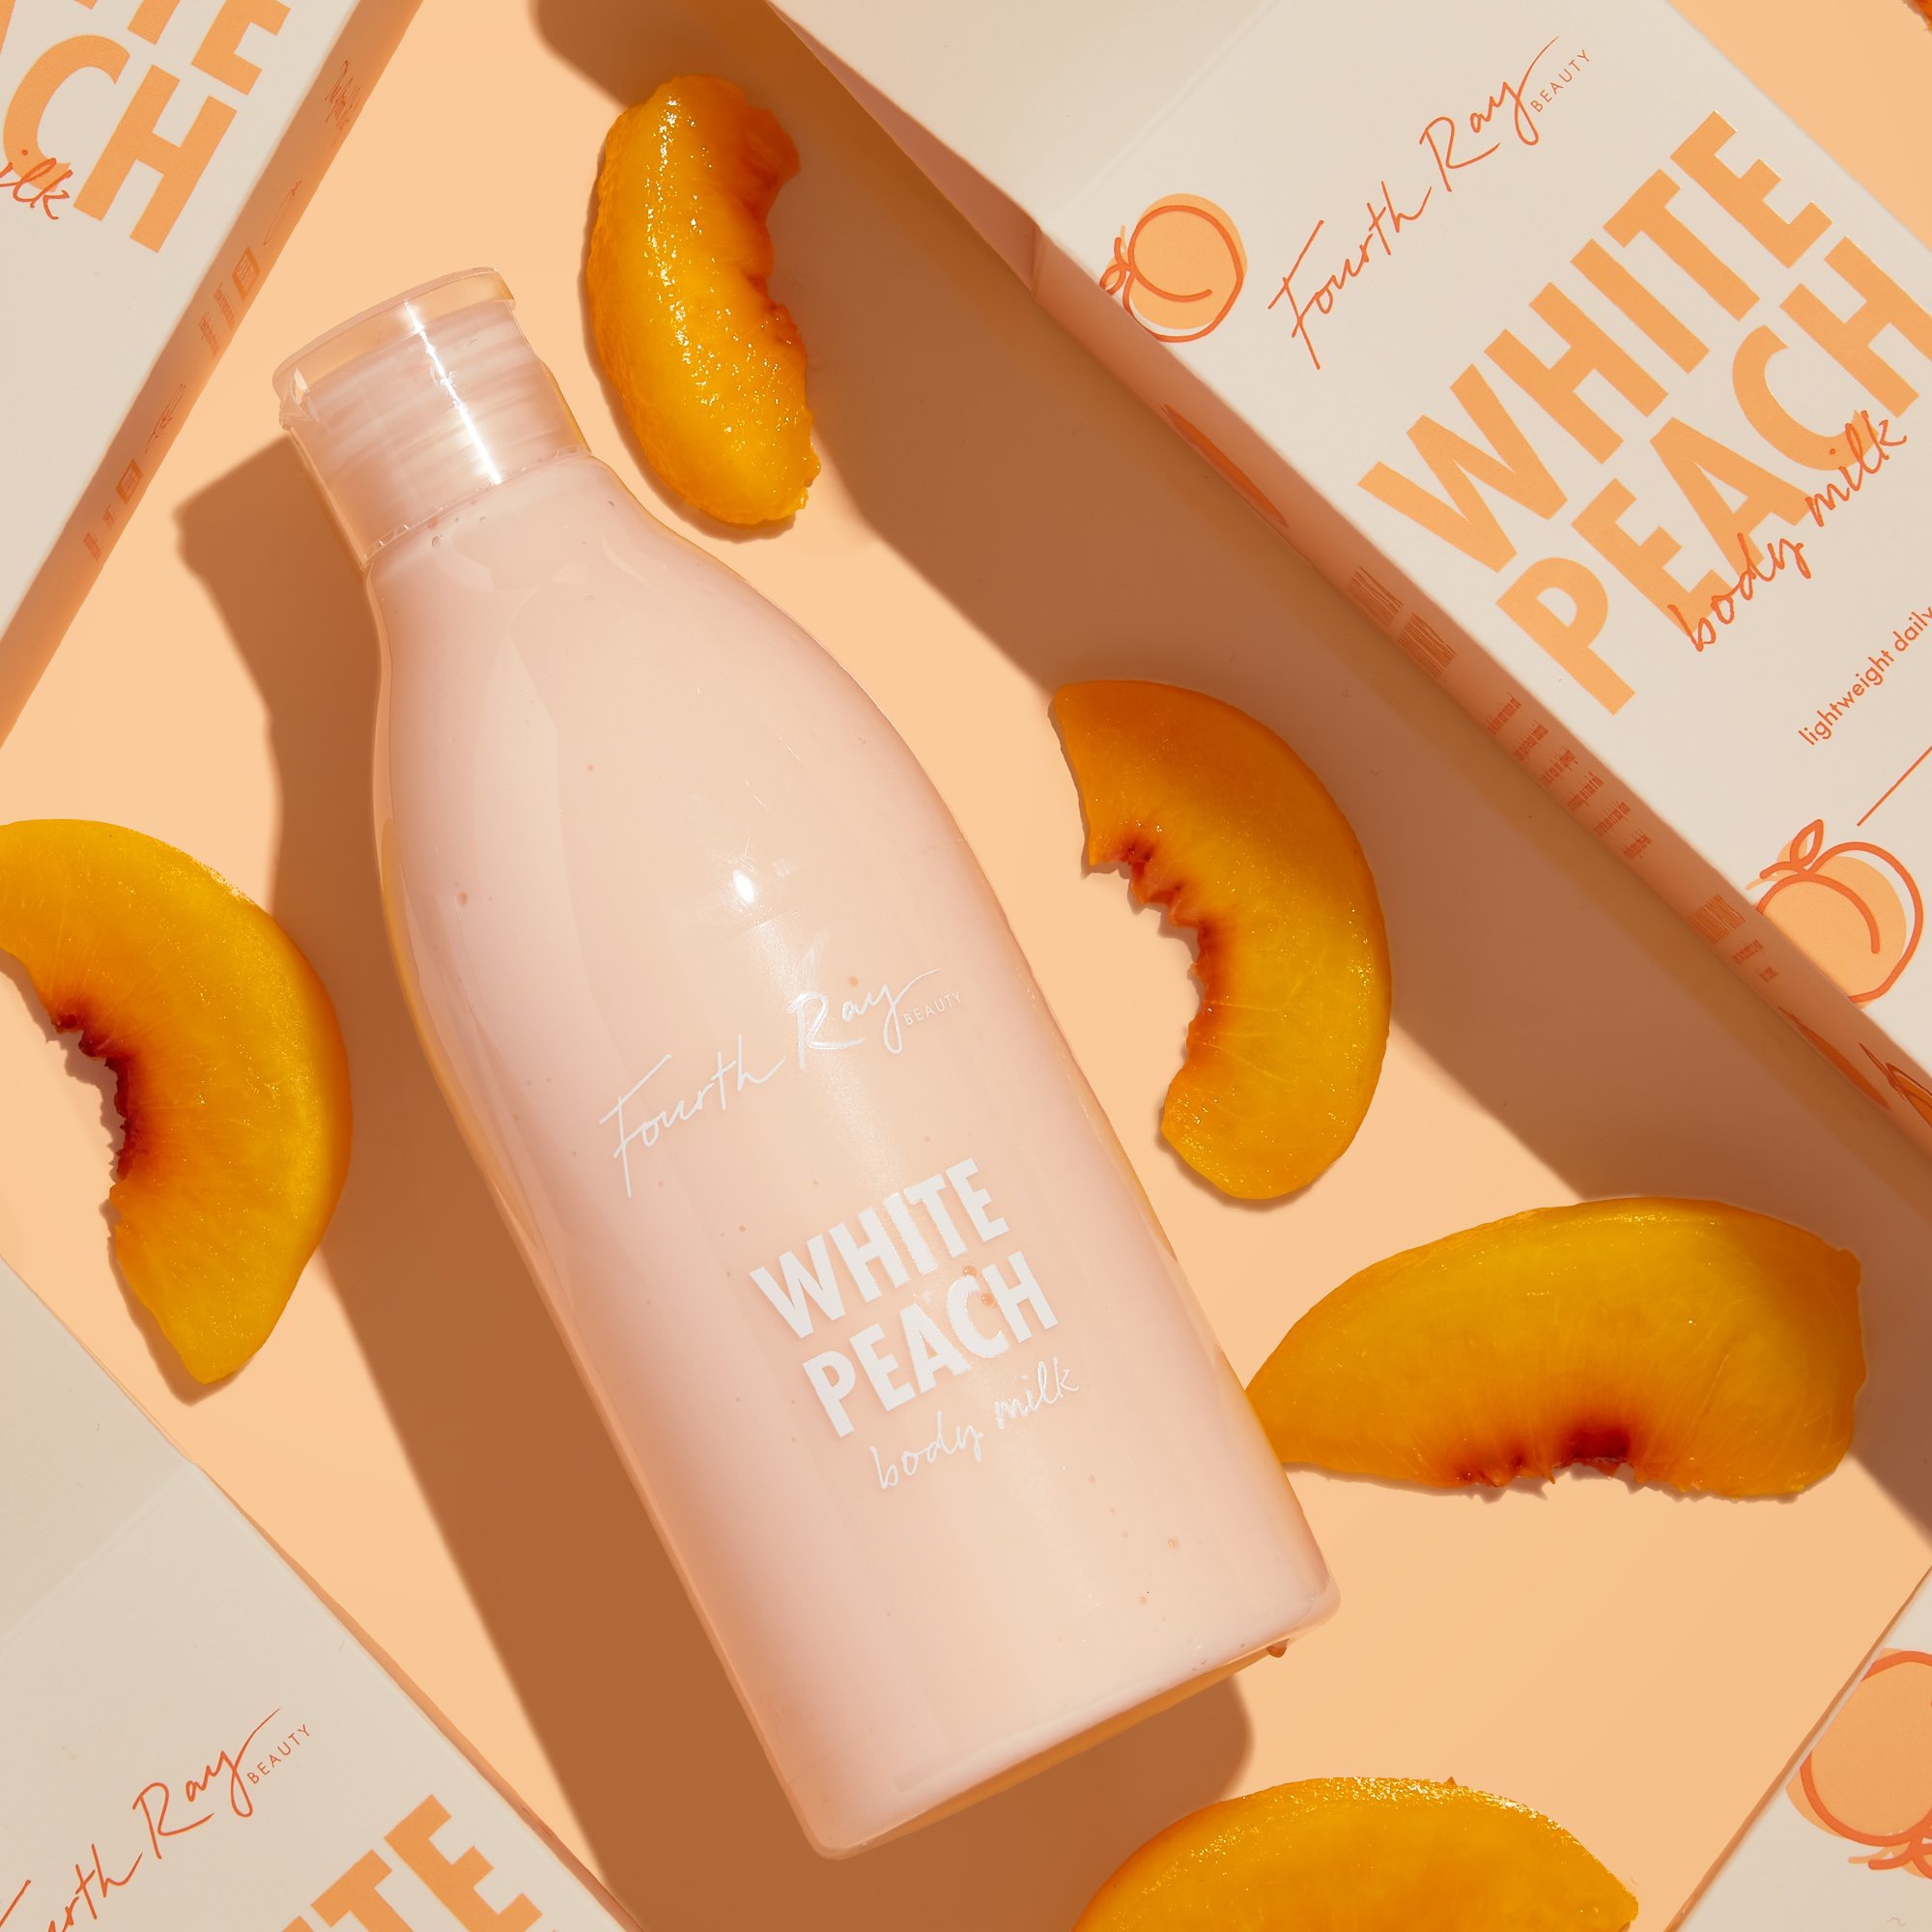 Fourth Ray White Peach Softening Body Milk